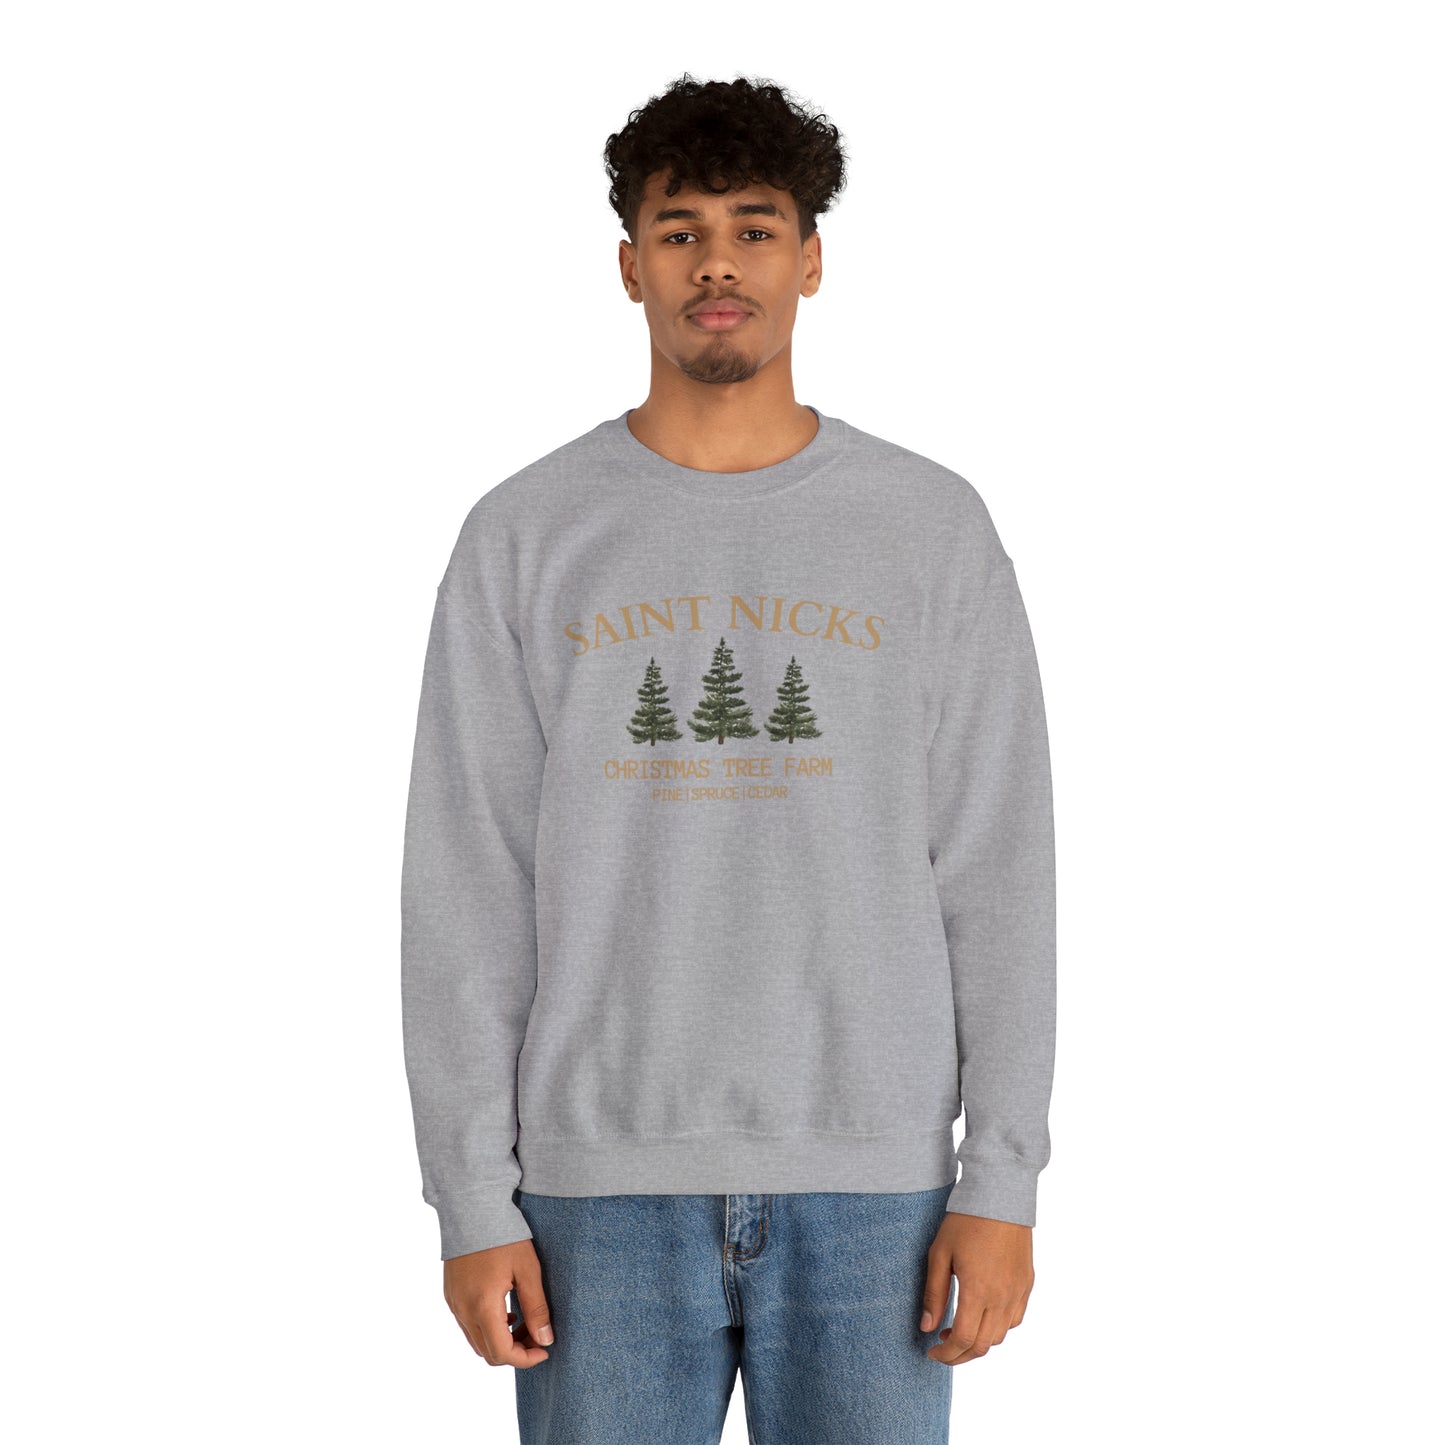 Saint Nicks Christmas Trees Unisex Heavy Blend Crewneck Sweatshirt